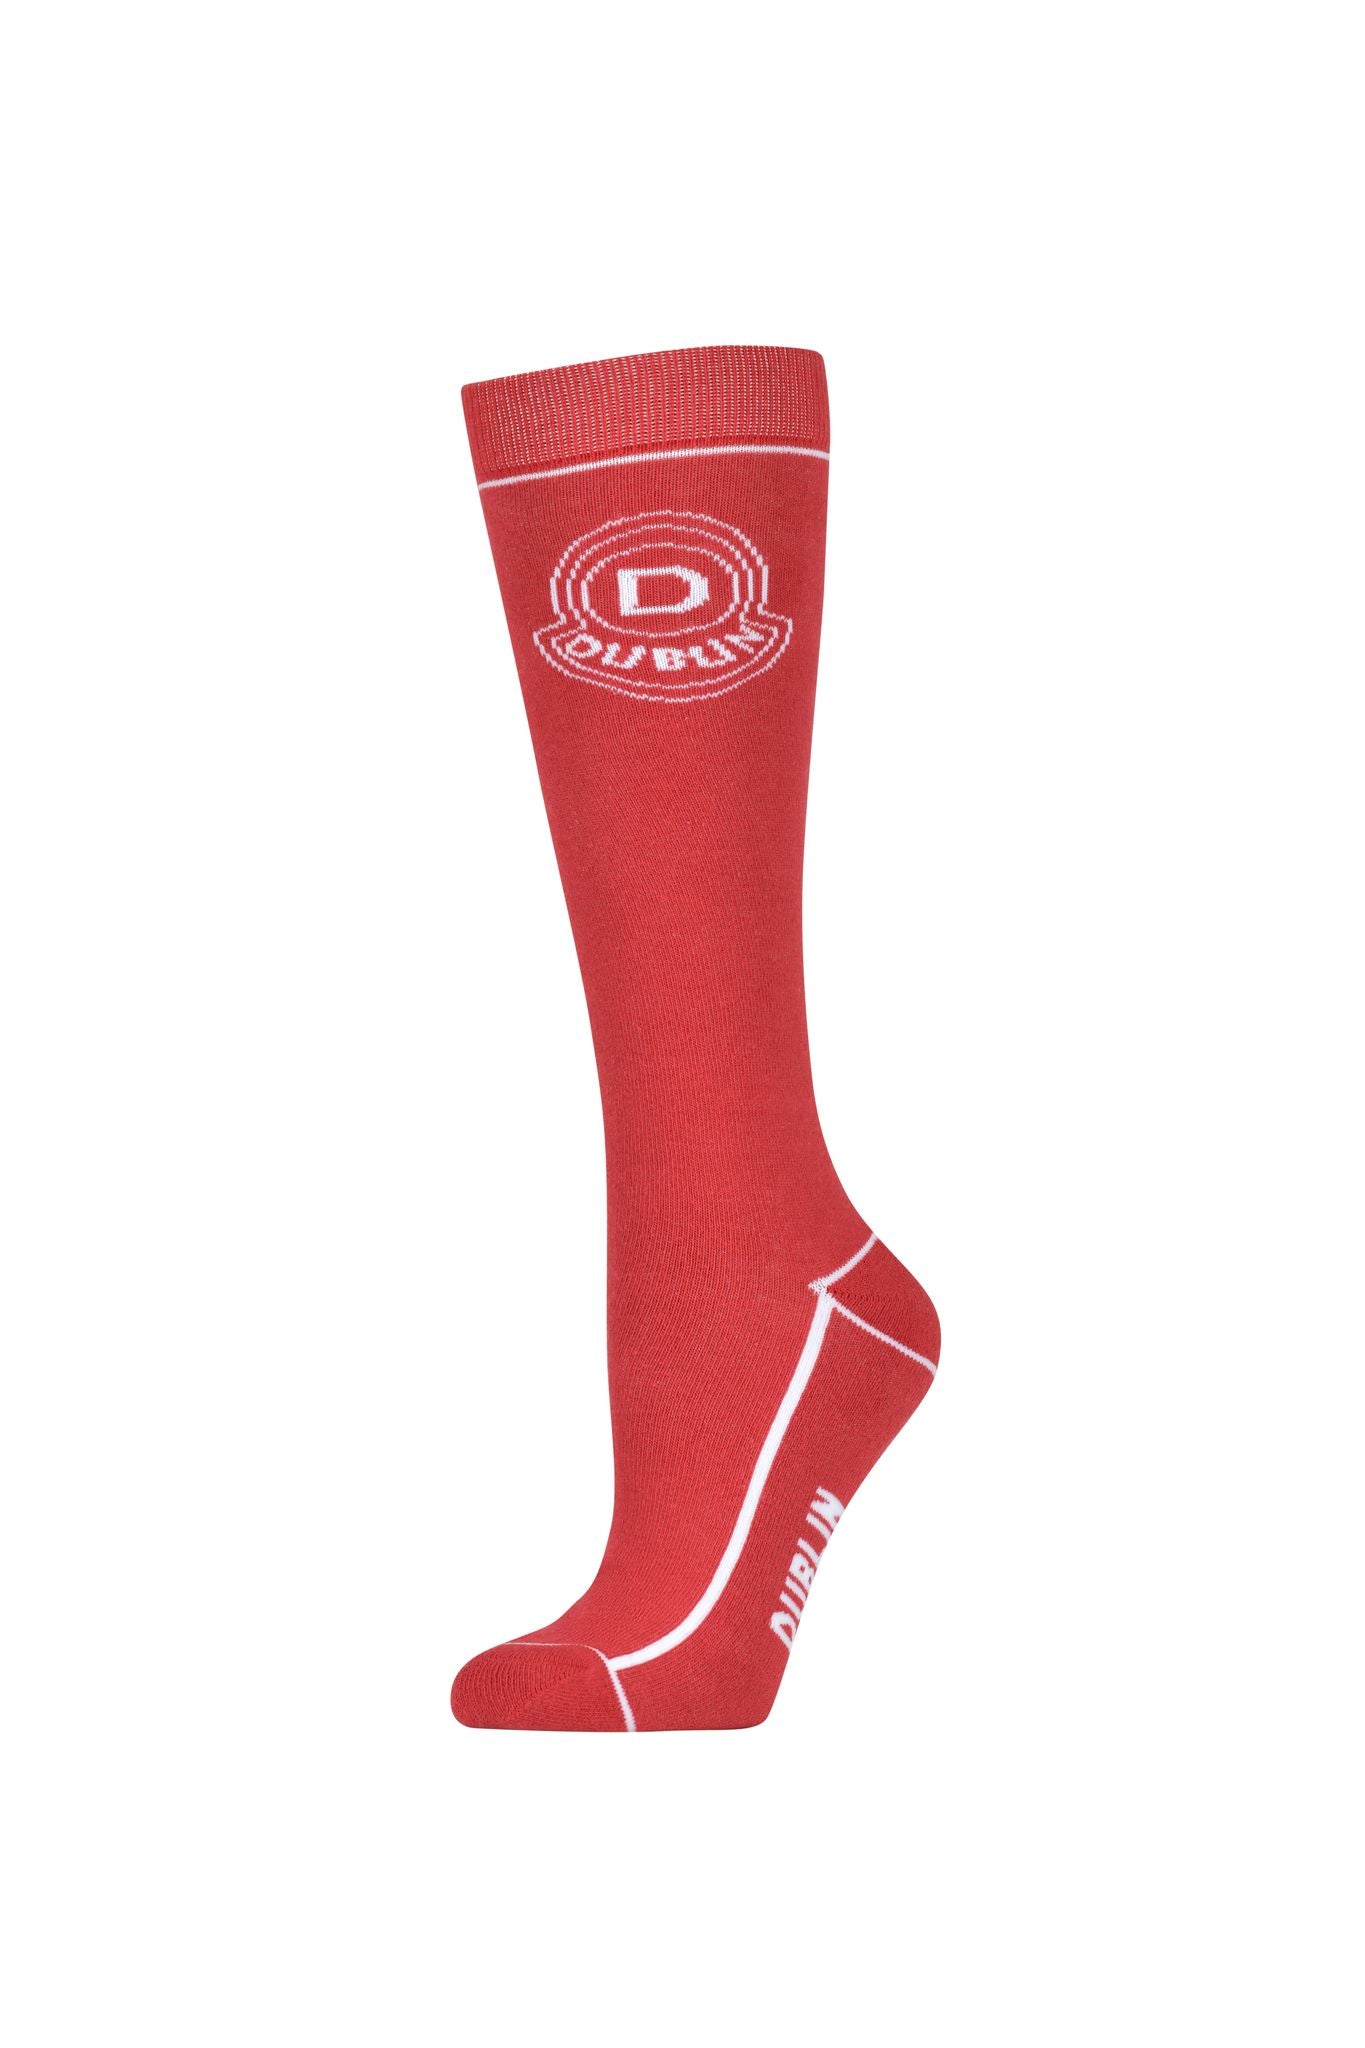 Dublin logo socks winter range